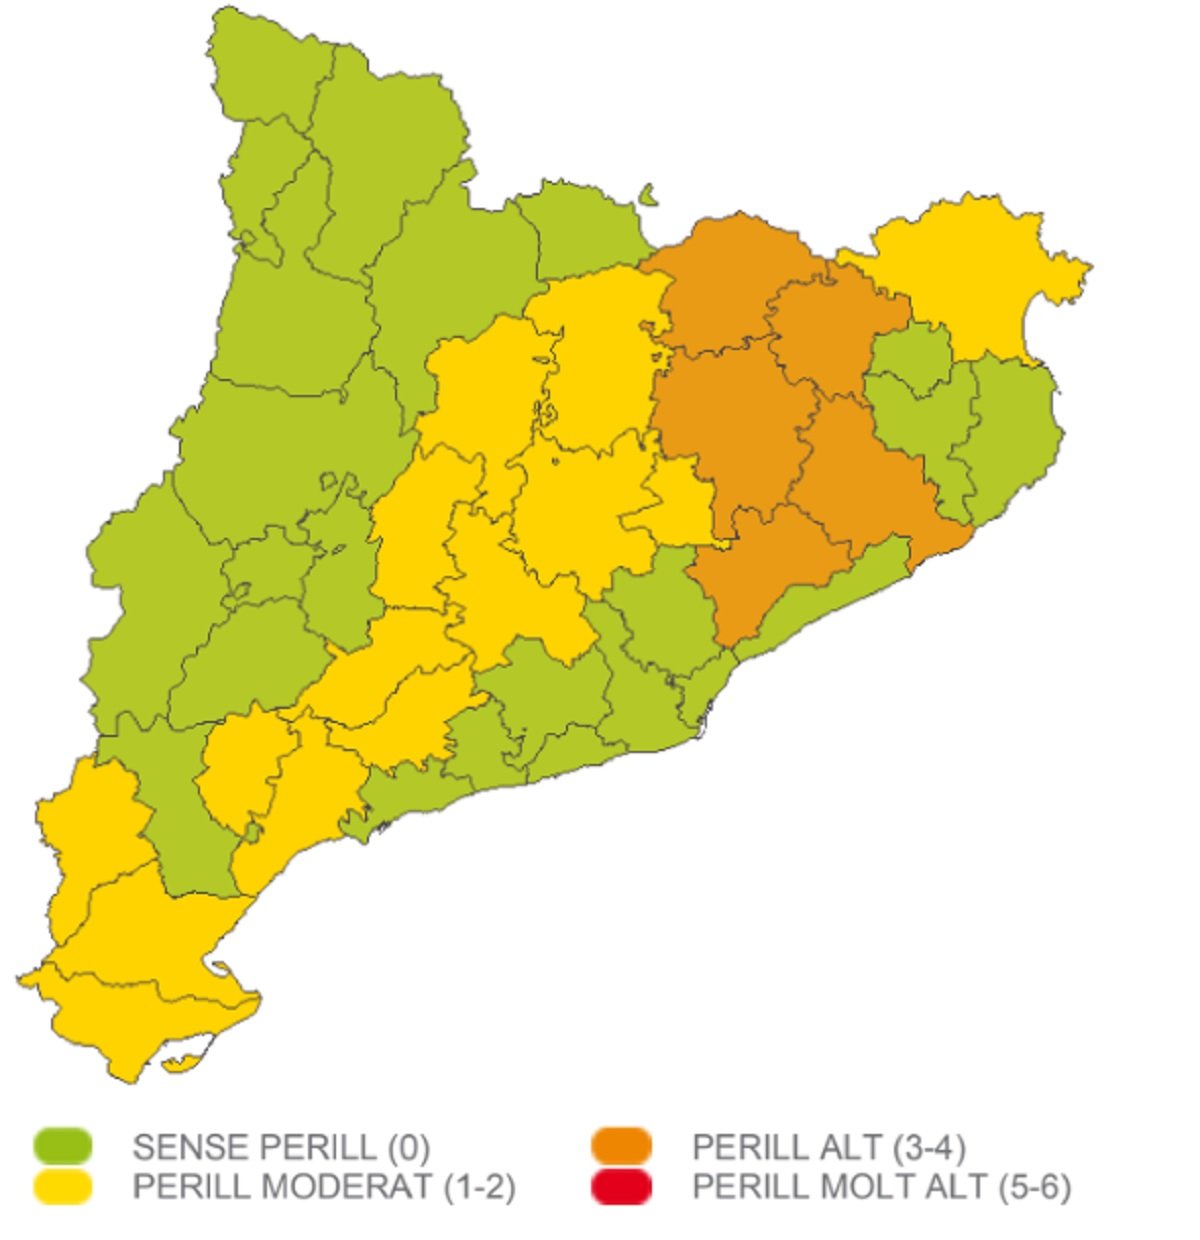 Mapa perill neu Catalunya dimarts, 7 de febrer Meteocat